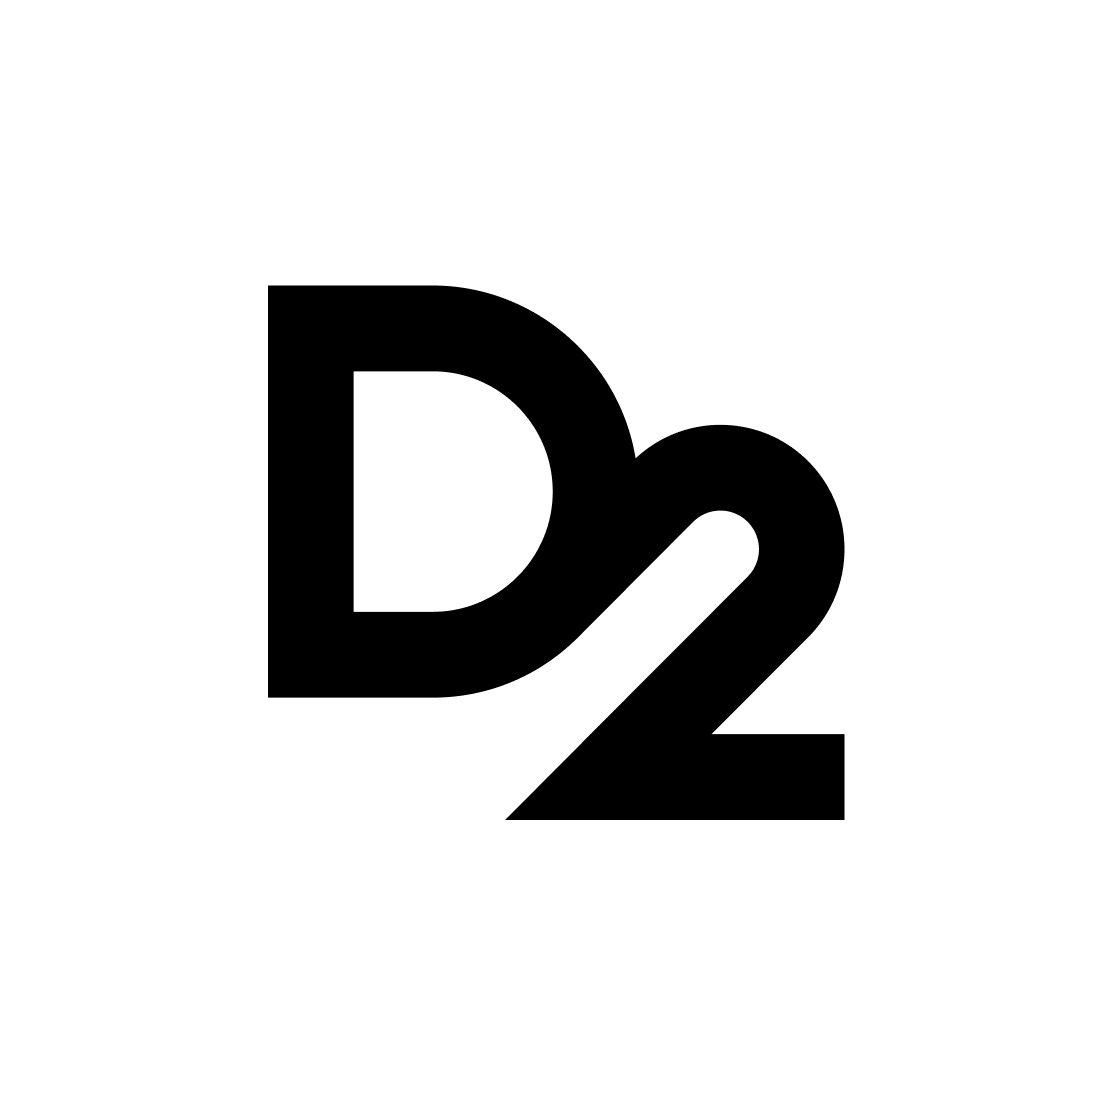 D2 Digital Development